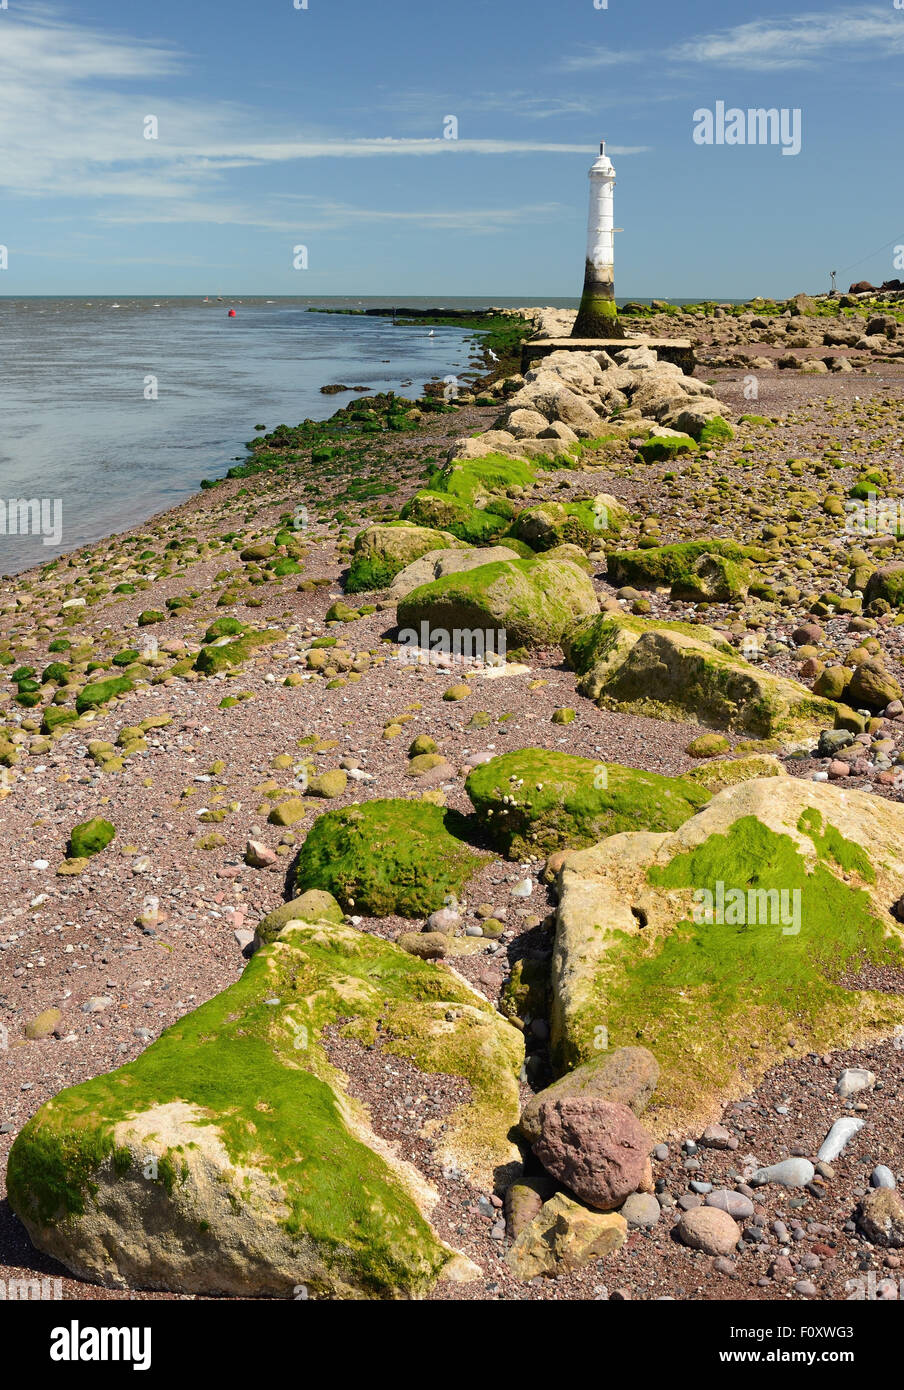 La foce dell'estuario del fiume Teign, e il faro Phillip Lucette sulla spiaggia di Shaldon, visto con la bassa marea. Foto Stock